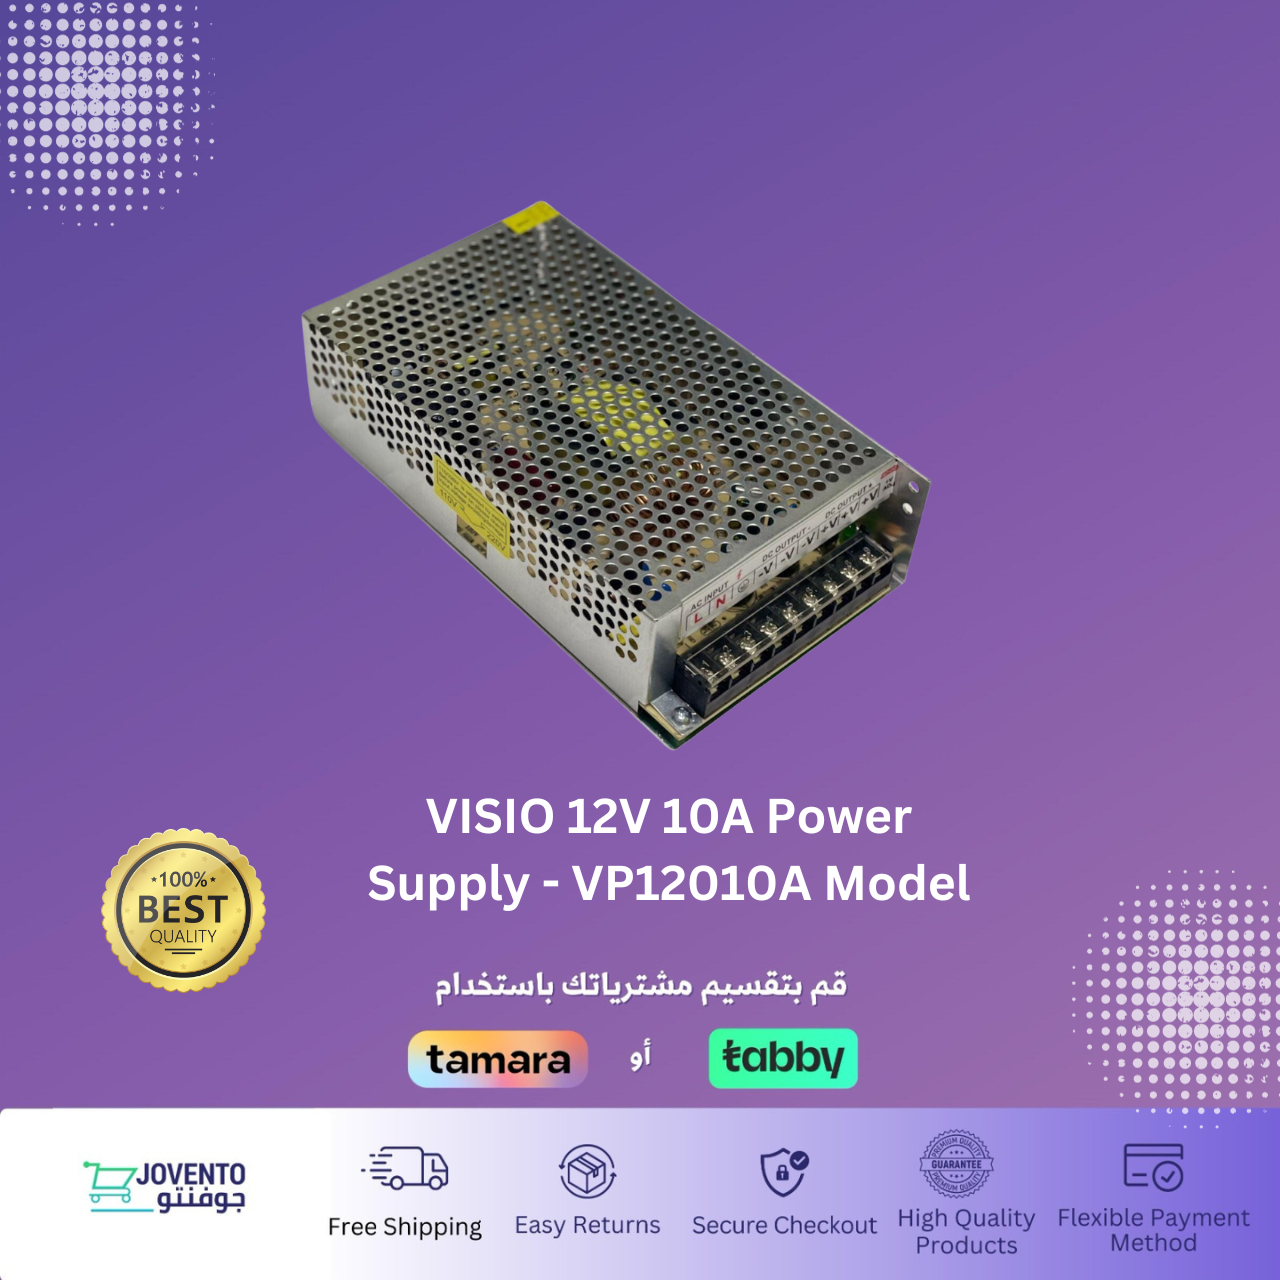 VISIO 12V 10A Power Supply - VP12010A Model